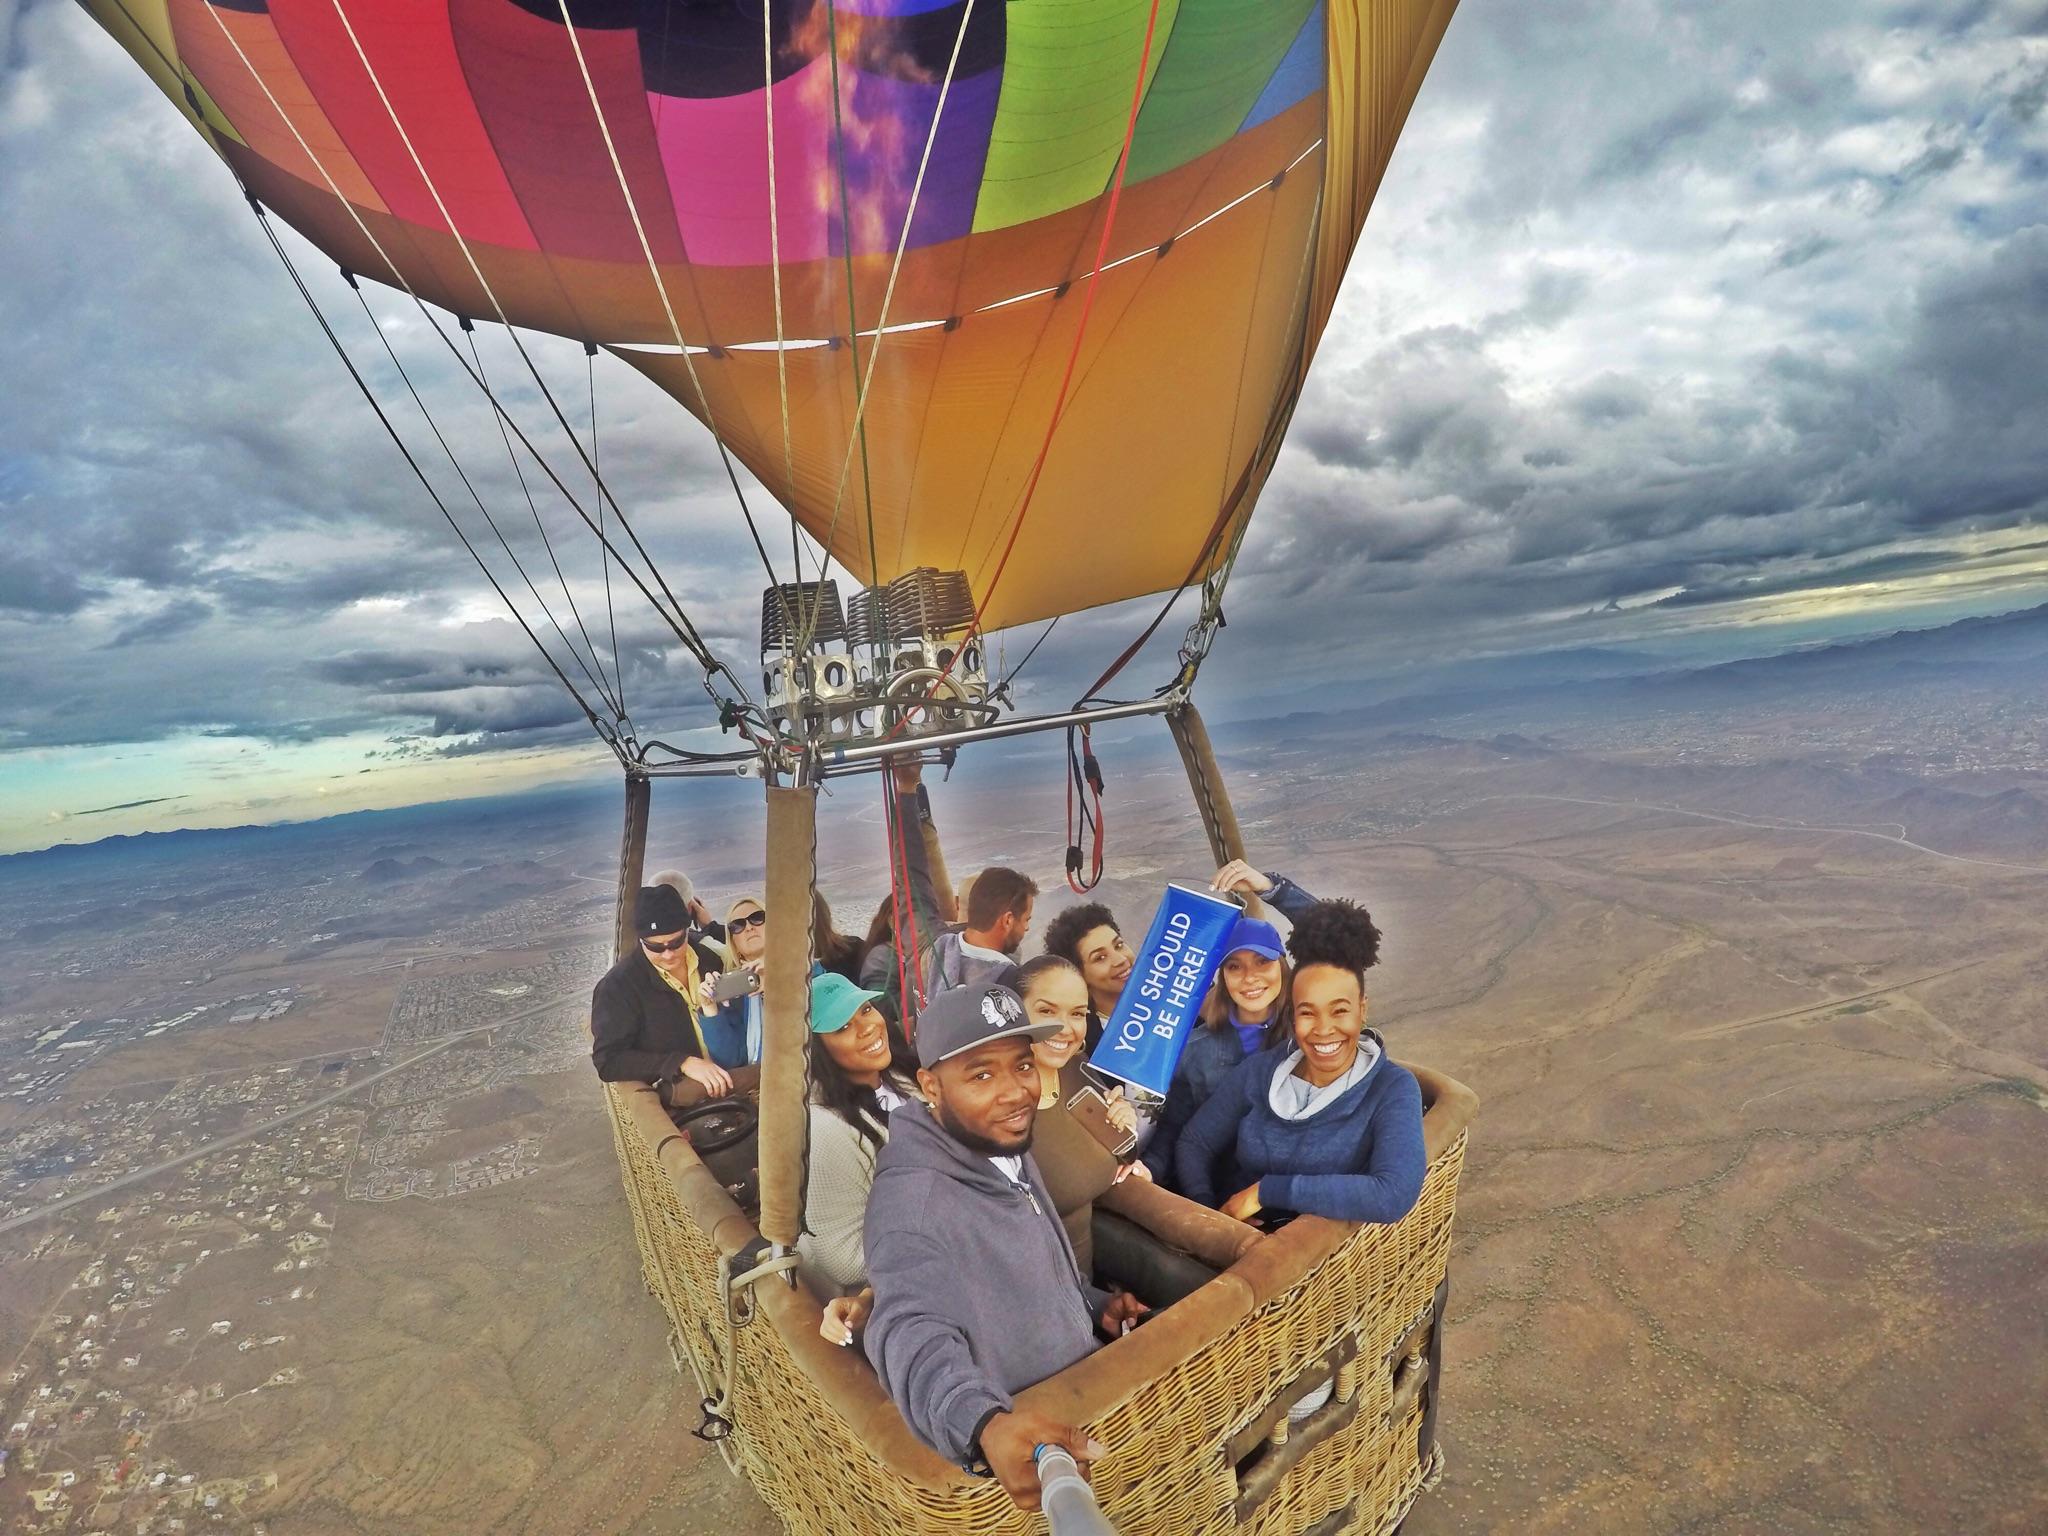 Albuquerque Hot Air Balloon Rides - Aerogelic Ballooning ...